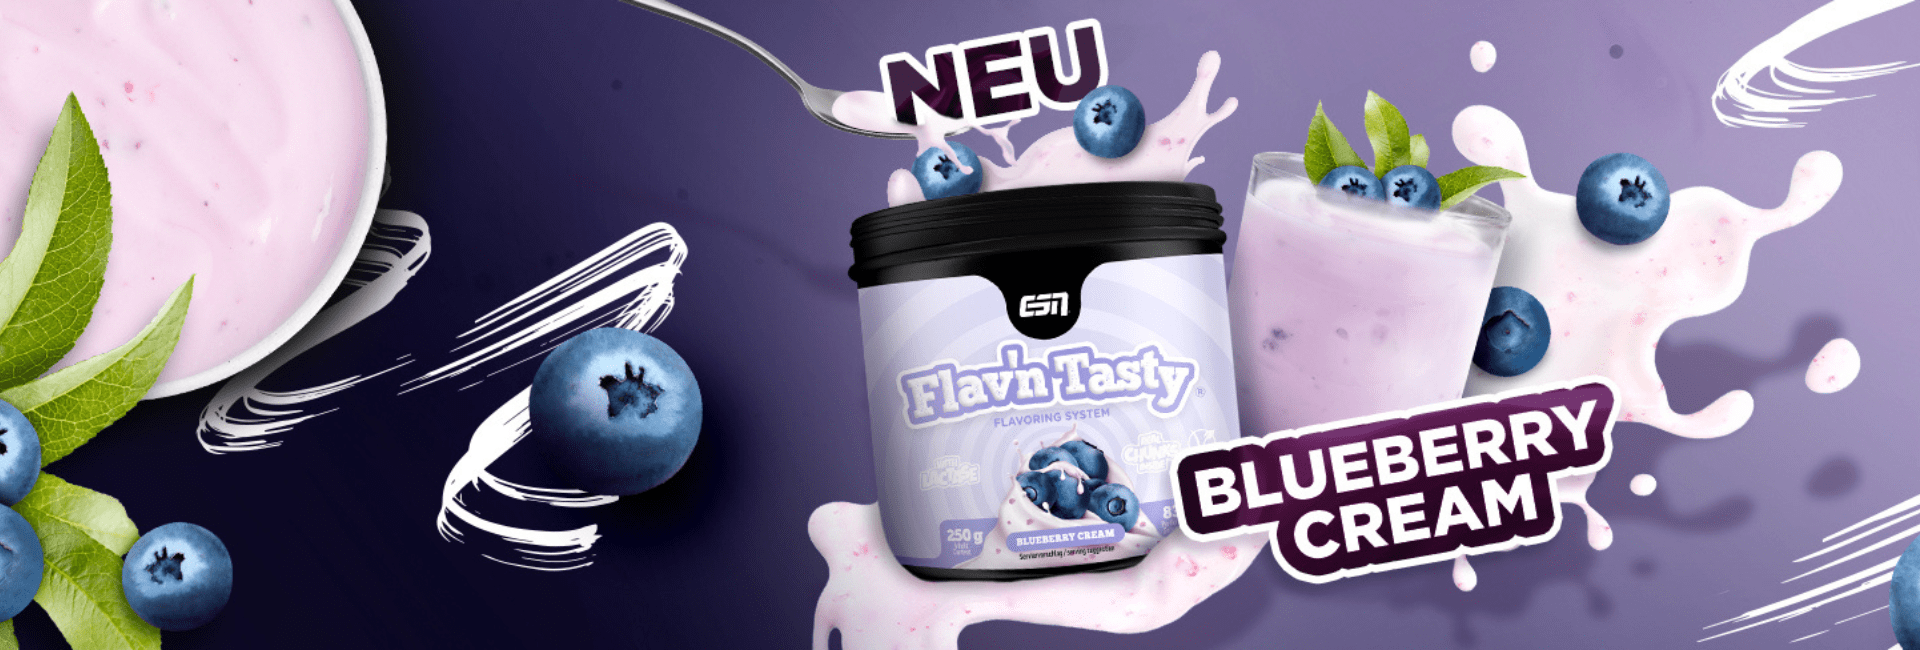 esn-flavn-tasty-blueberry-cream-banner